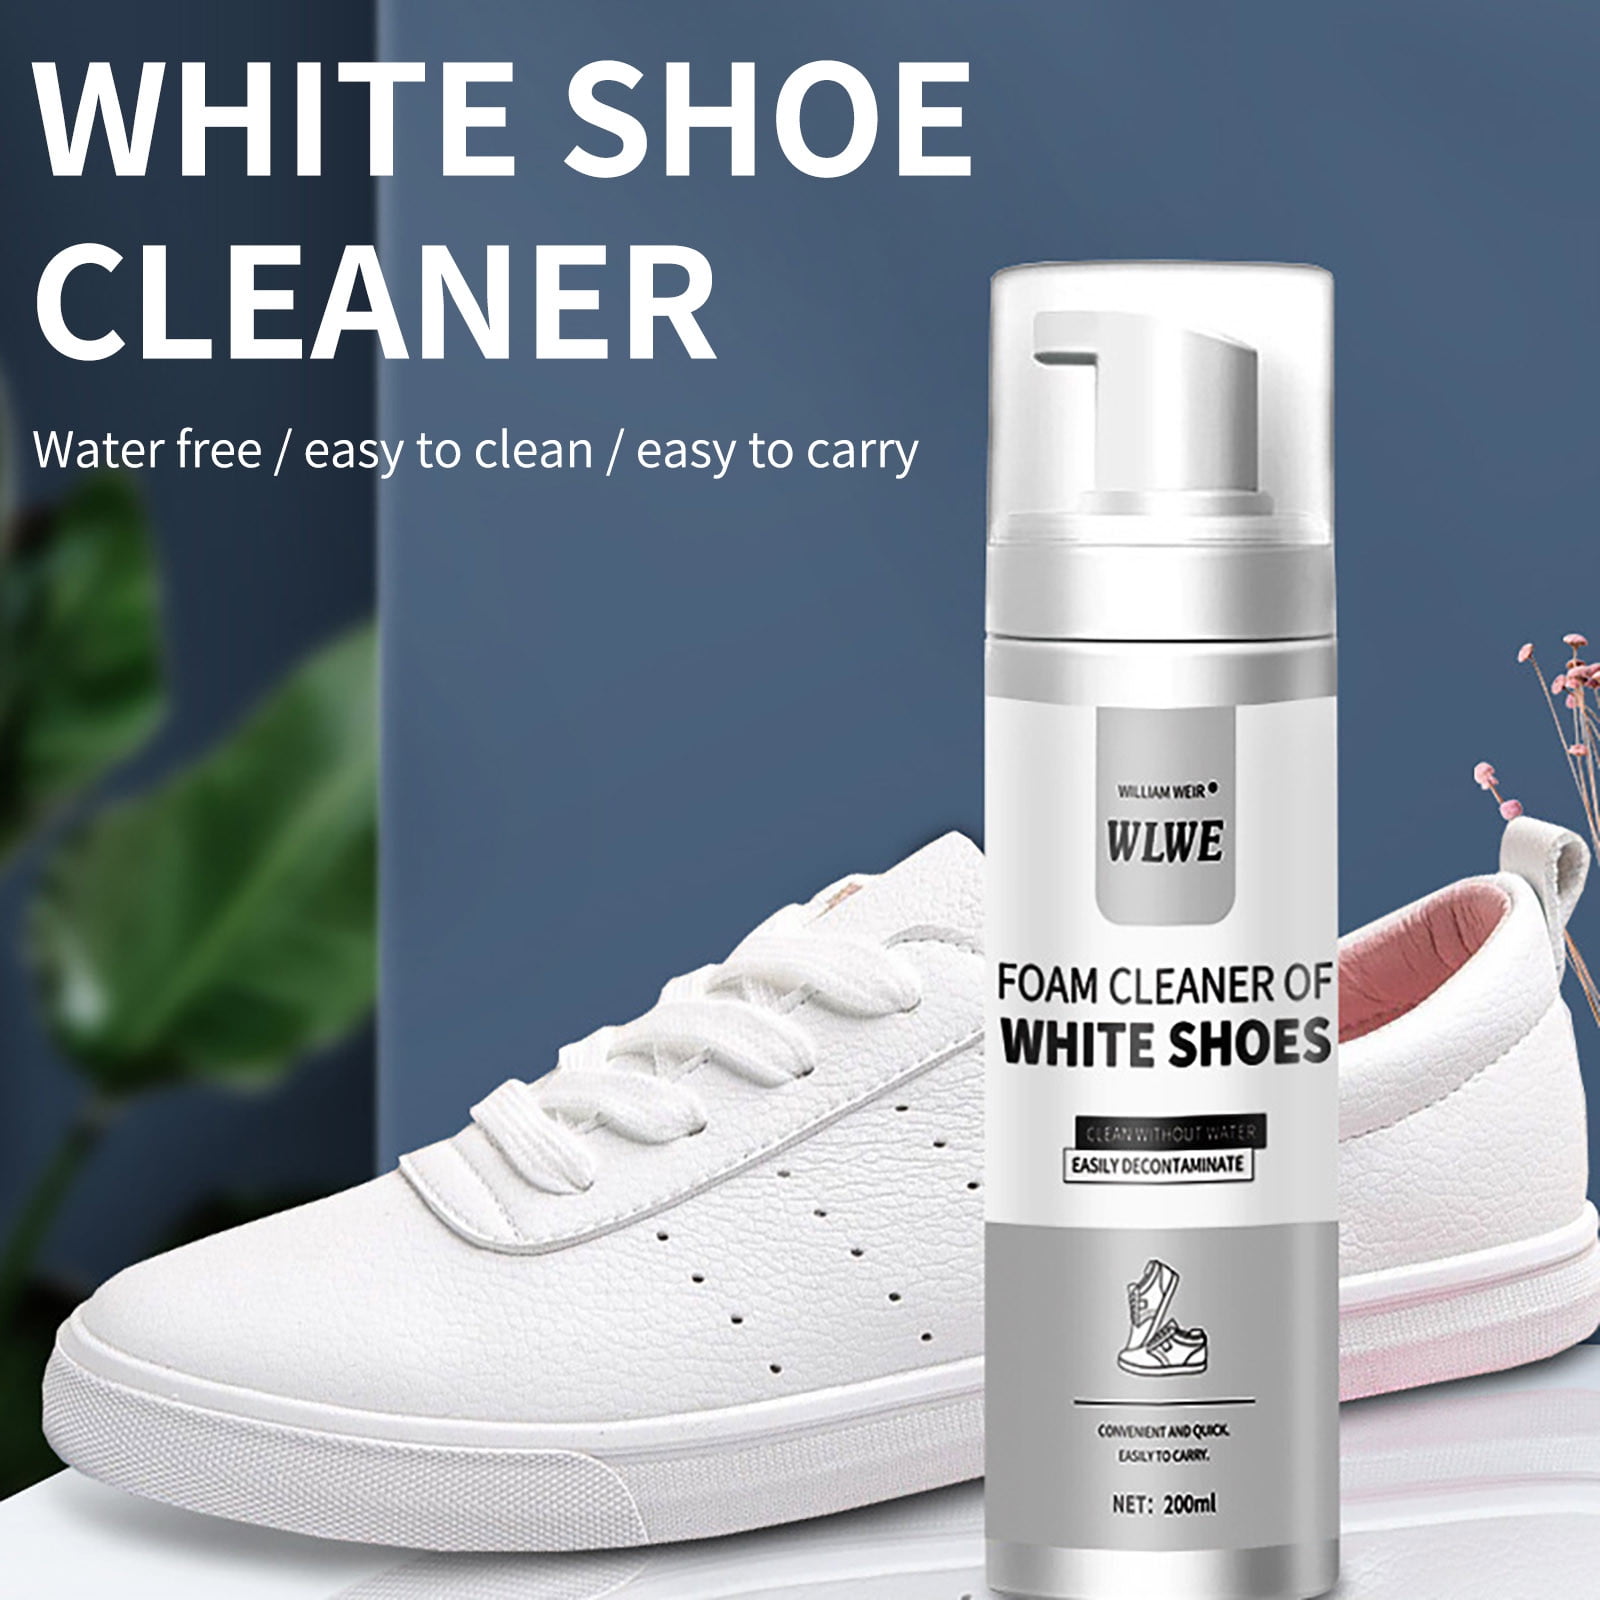 Sneaker Magic Organic Premium Sneaker Cleaner